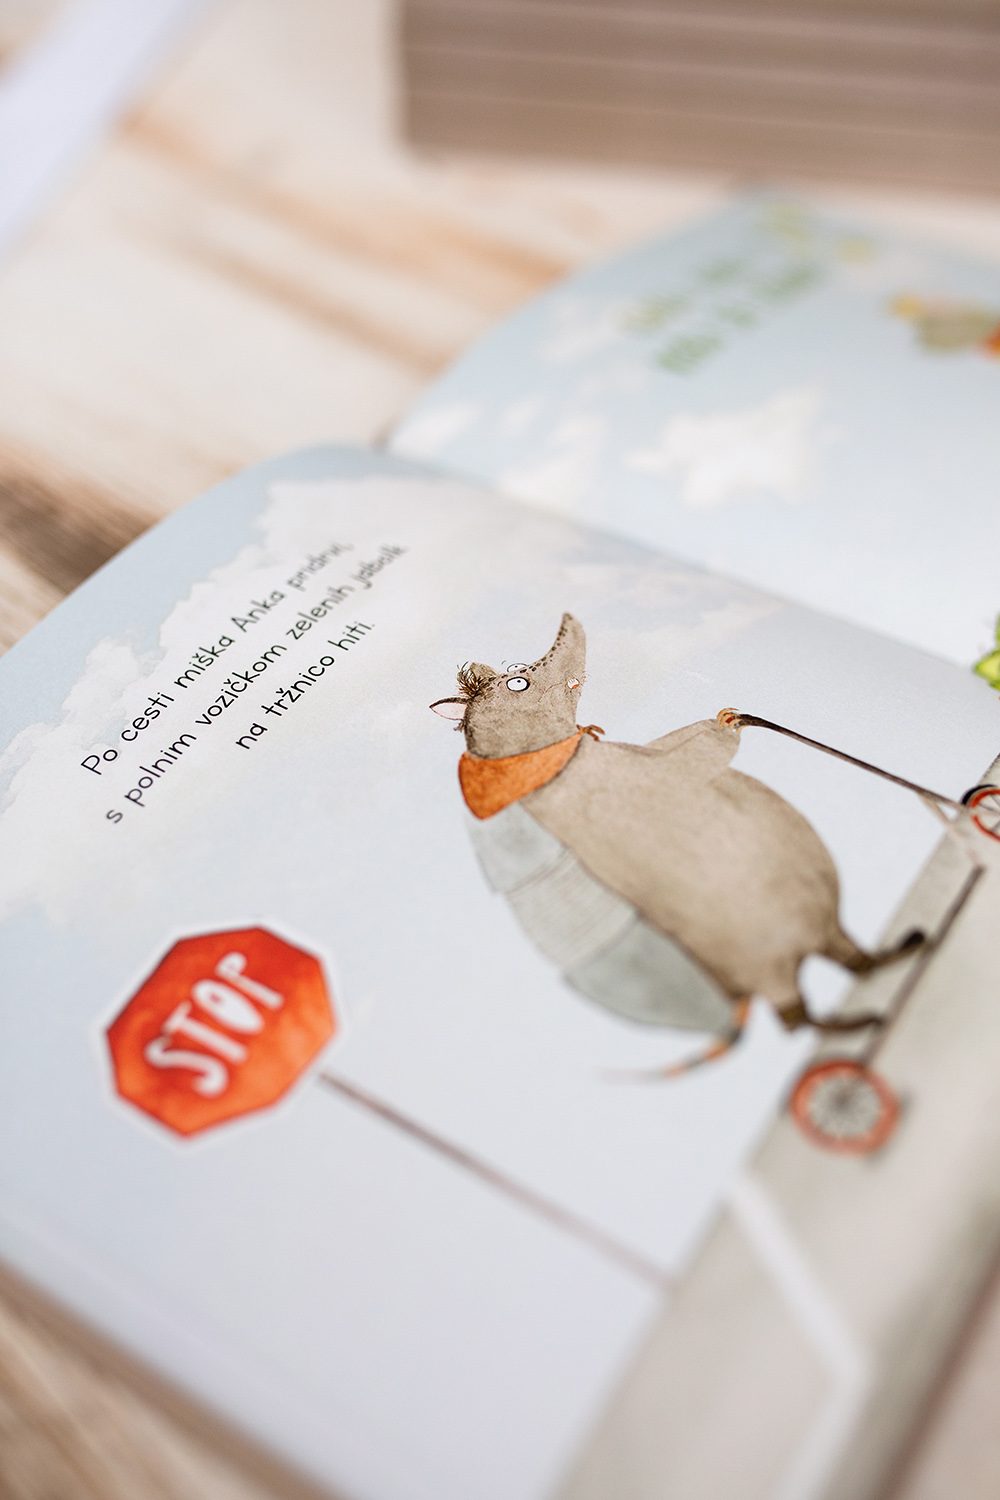 Olek – Ein Duftbuch für Kinder